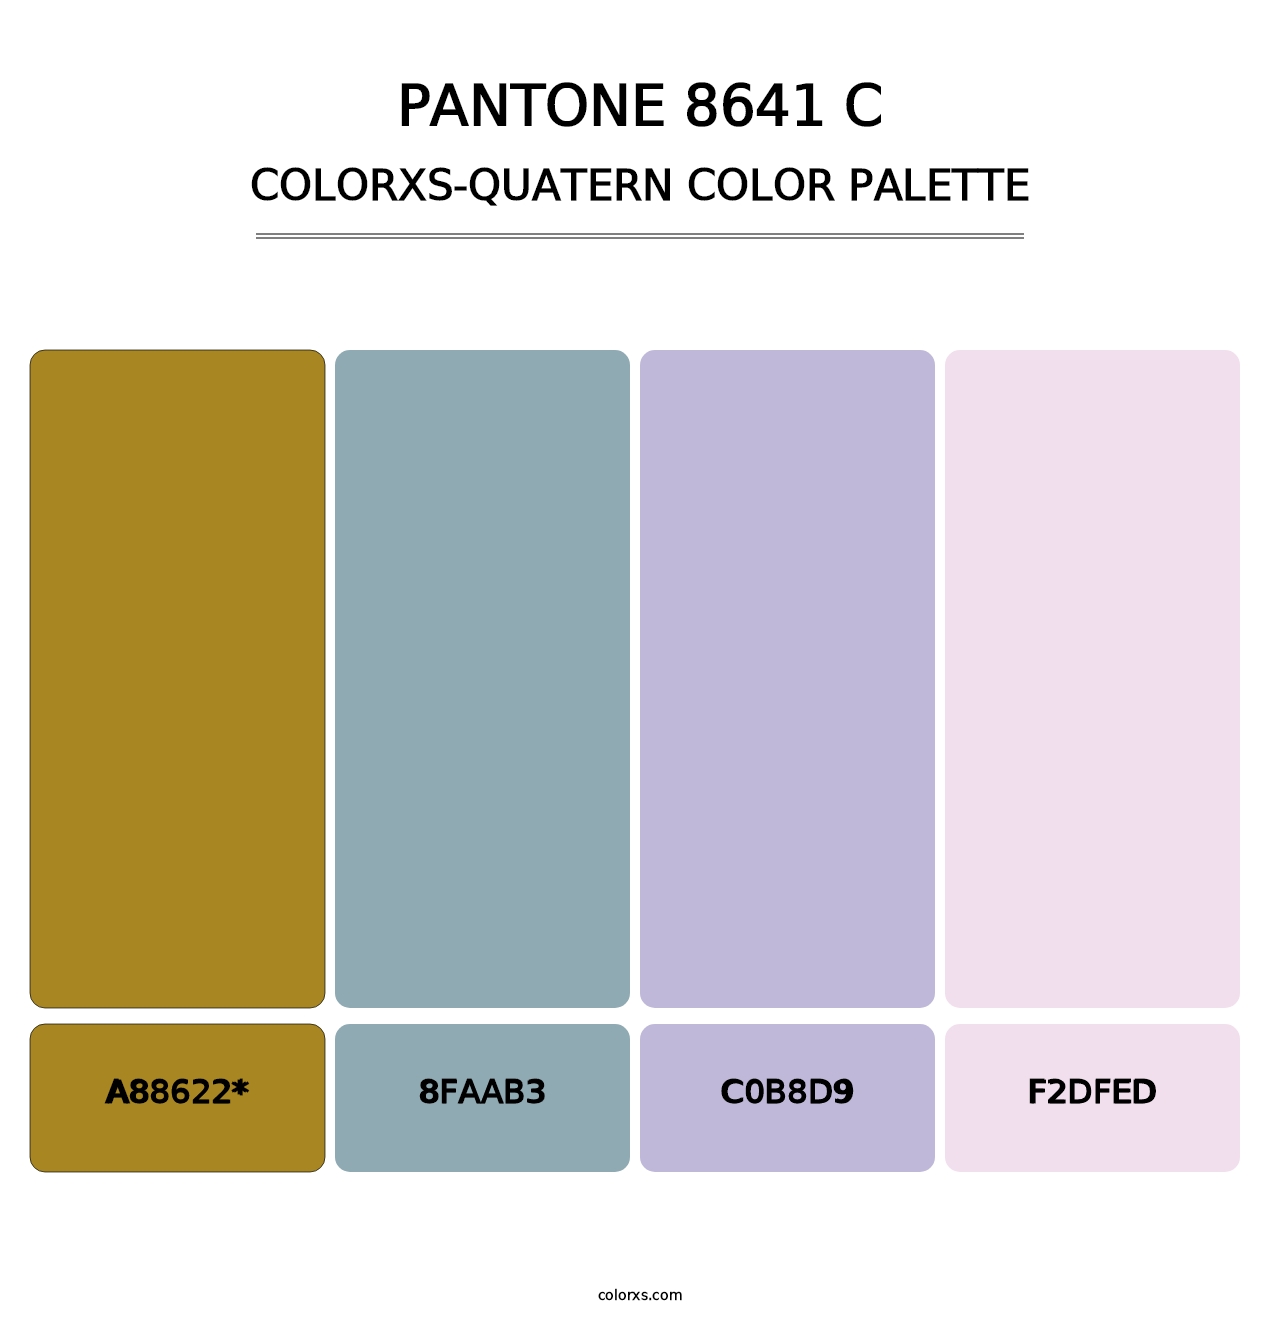 PANTONE 8641 C - Colorxs Quatern Palette